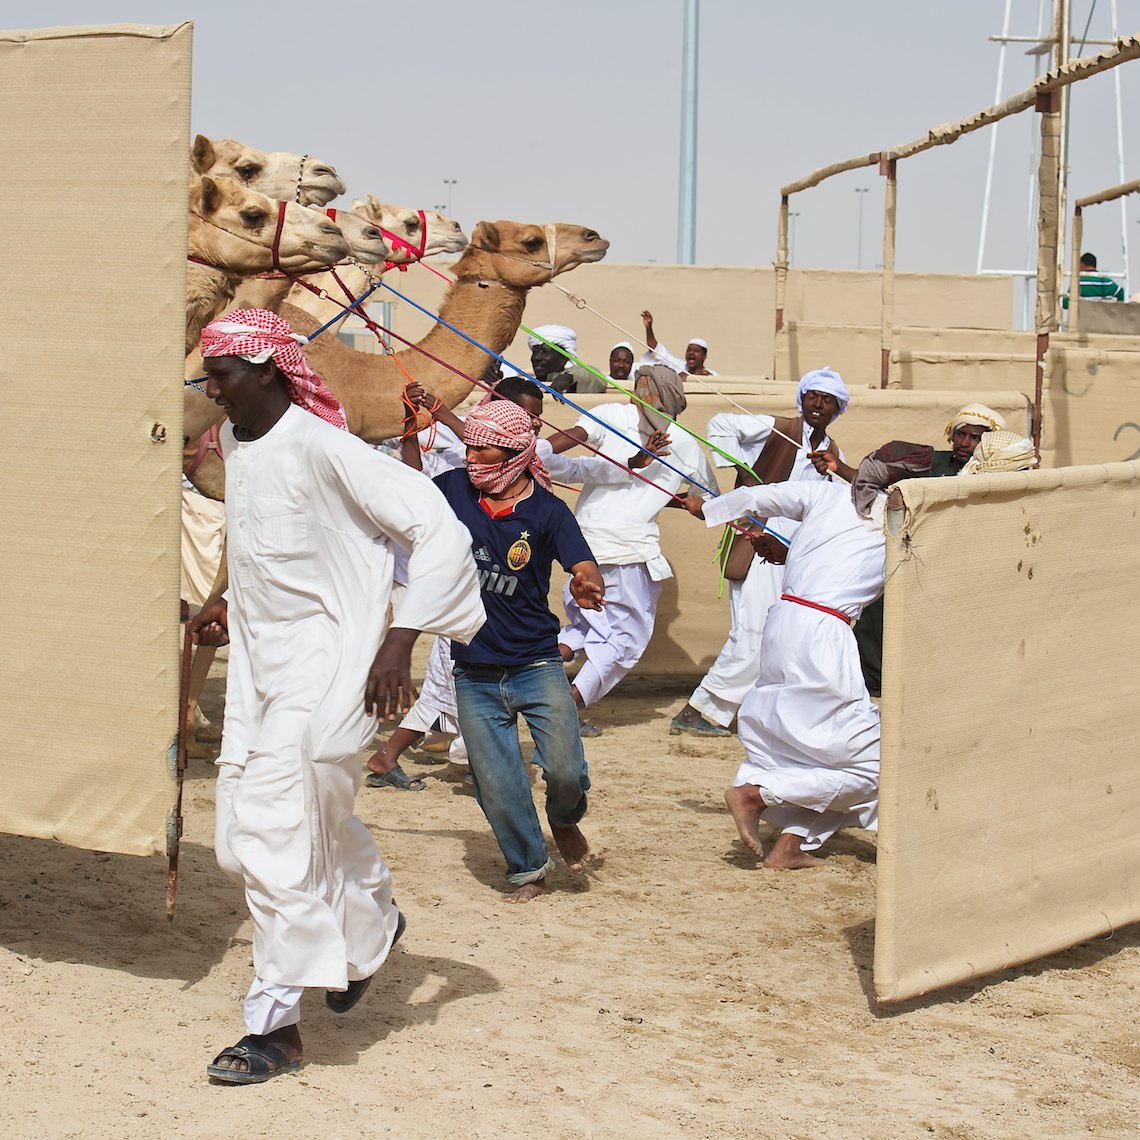 Qatar Al Shahaniya camel race preparing for  the start